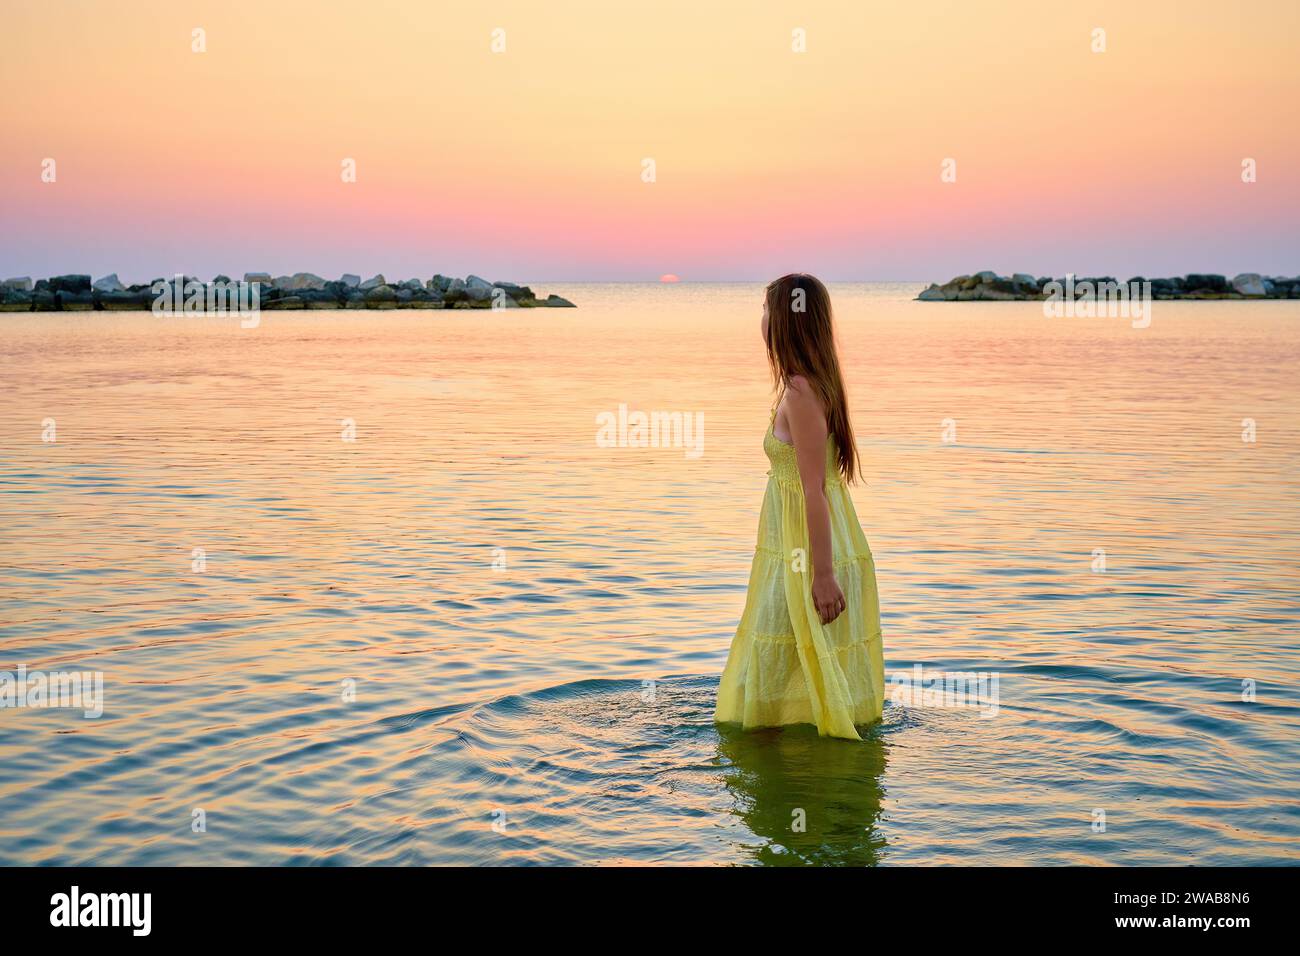 Una giovane donna con un vestito giallo brillante incontra l'alba, corre gioiosamente attraverso l'acqua di mare Foto Stock